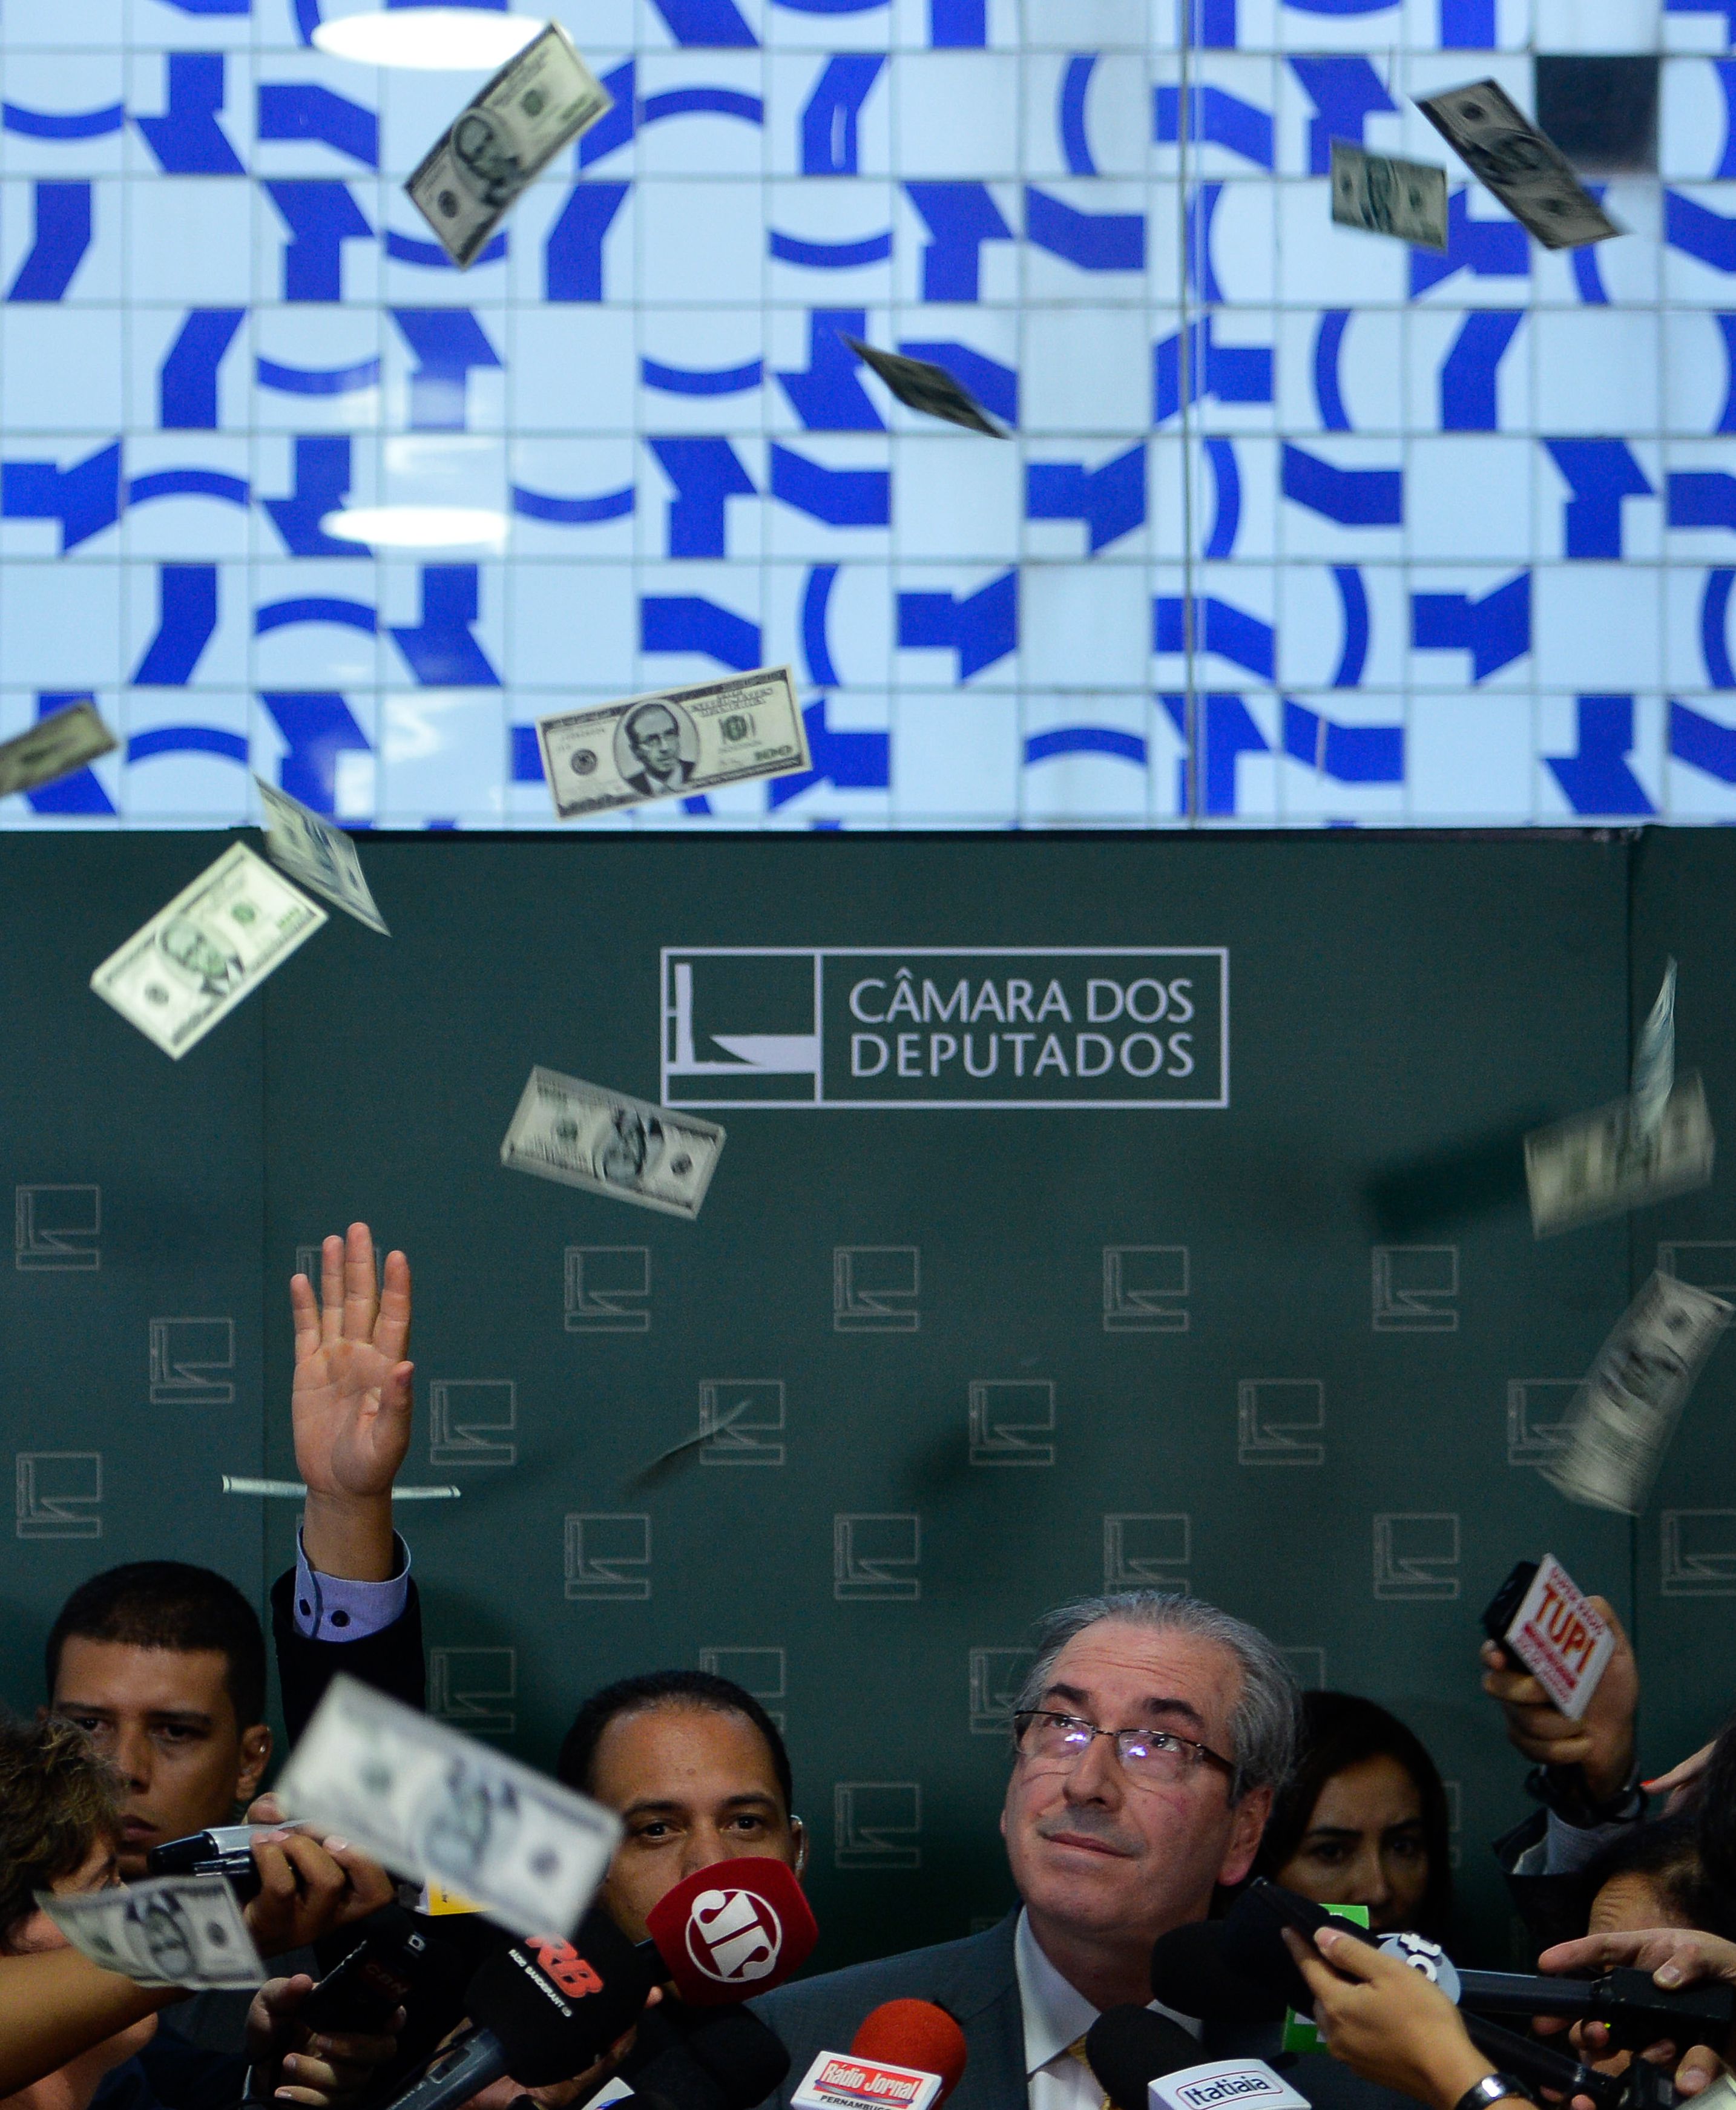 Políticos corruptos: Os escândalos de corrupção envolvendo políticos têm sido frequentes no Brasil.
Fraudes em licitações: Empresas corruptas muitas vezes manipulam processos de licitação para obter contratos.